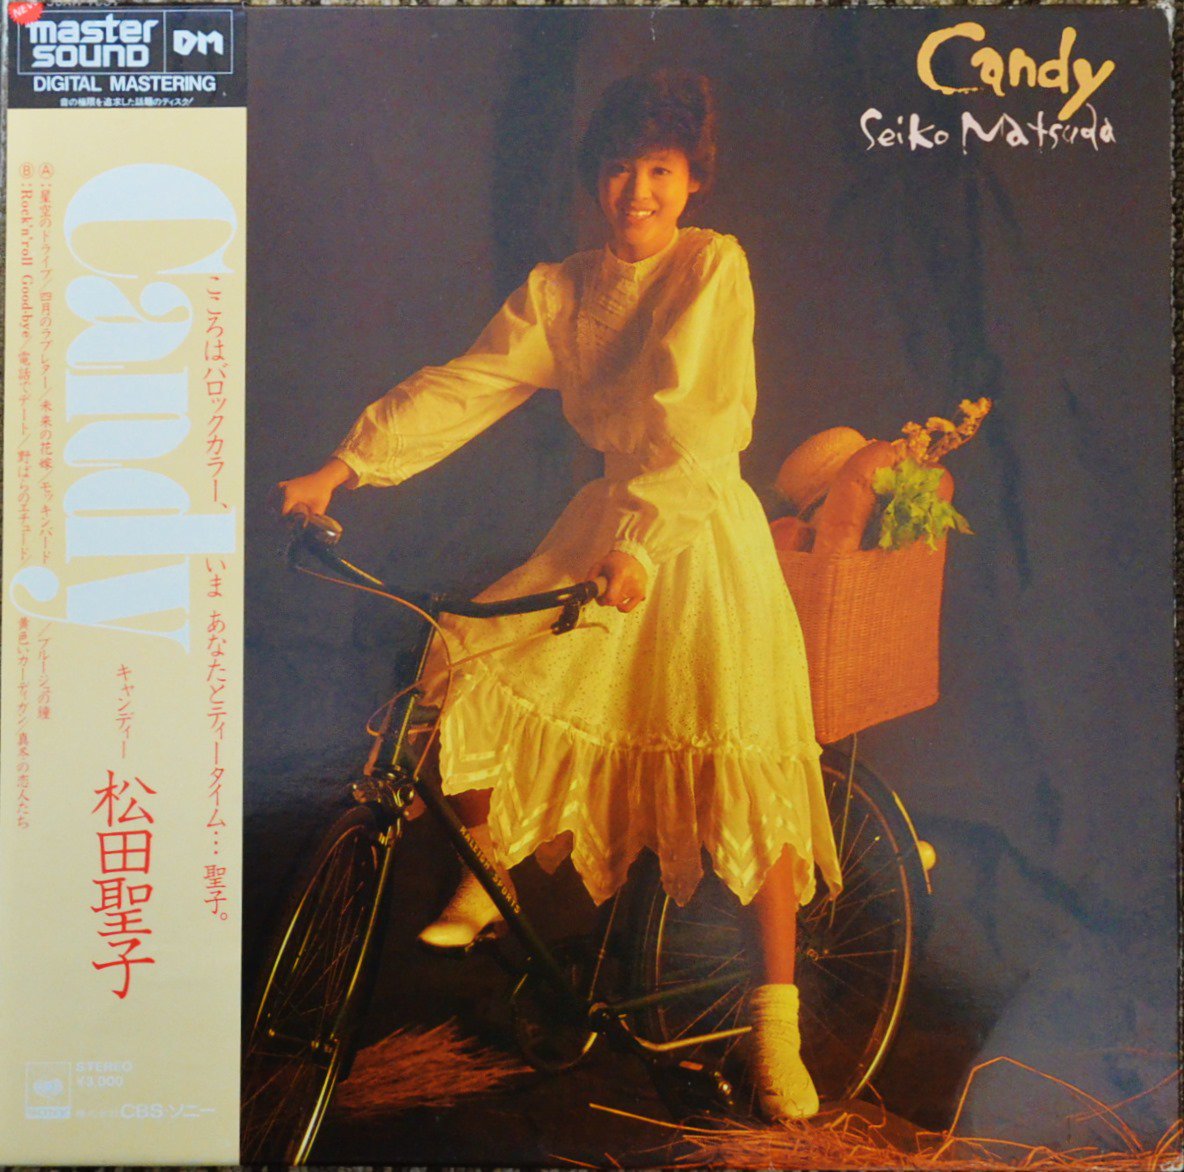 松田聖子 SEIKO MATSUDA / キャンディー CANDY (LP)